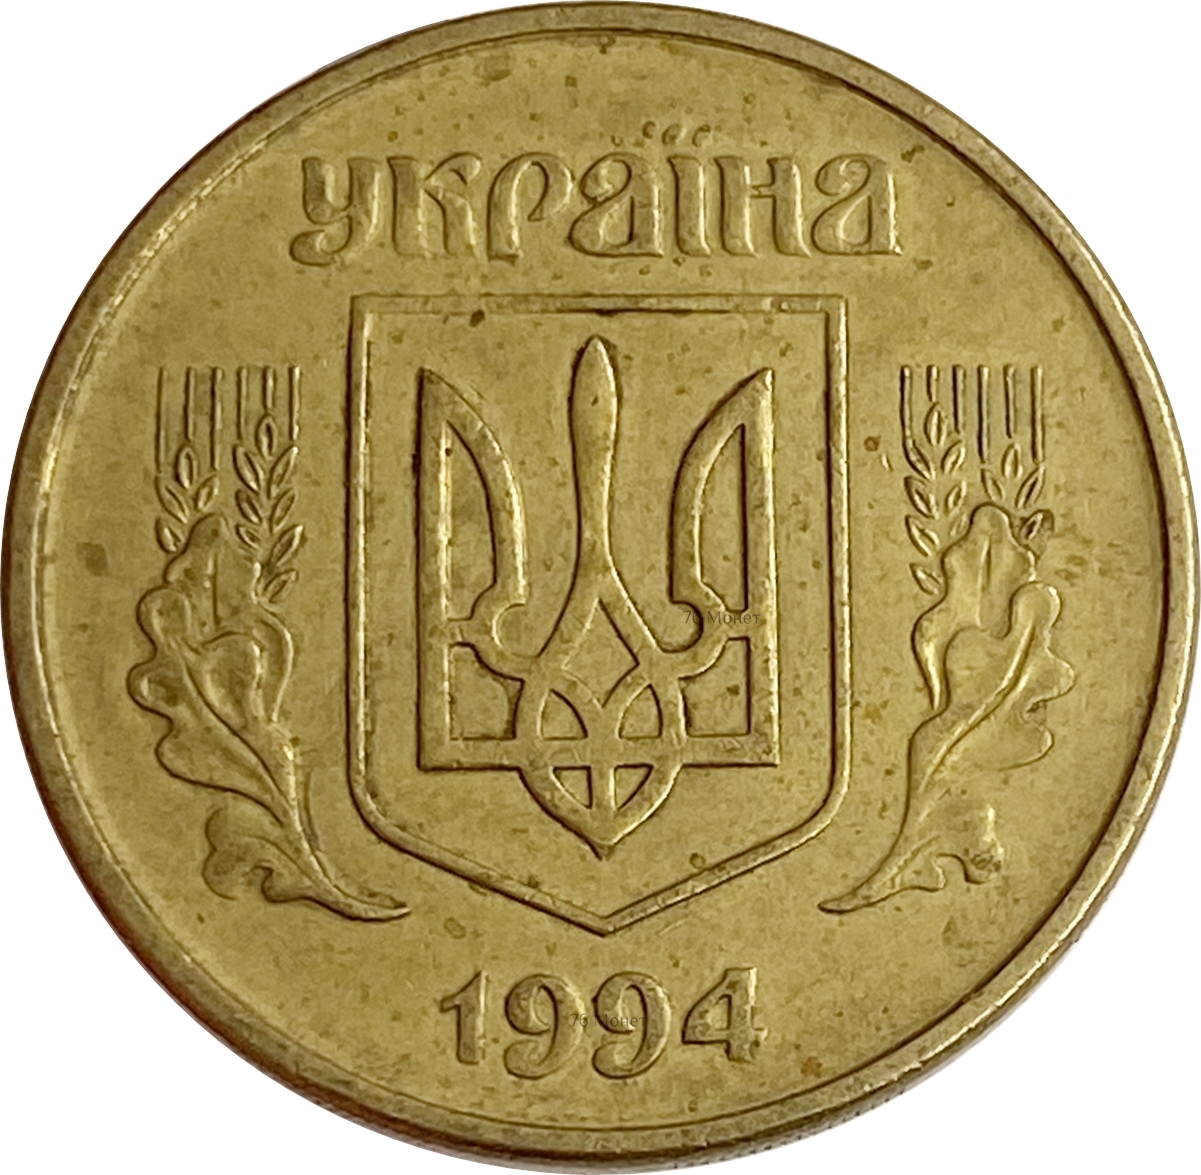 Купить монеты украины. 50 Копеек 1996 года. Герб Украины на монетах. Монета 25 копеек Украина 2012 год. 50 Копийок 2008.